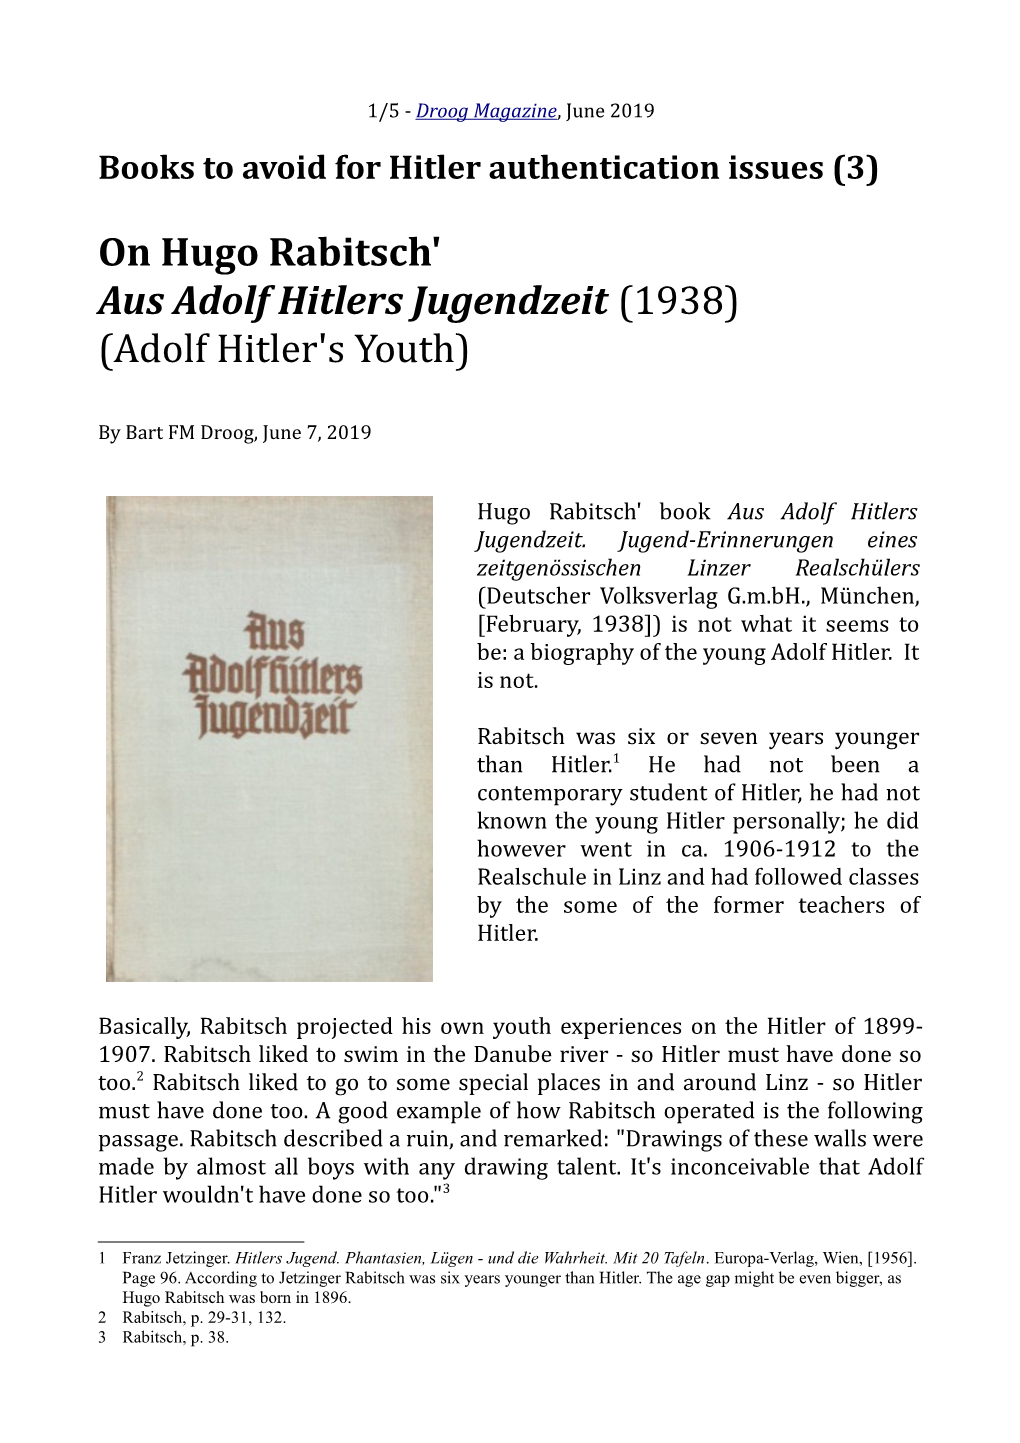 On Hugo Rabitsch' Aus Adolf Hitlers Jugendzeit (1938) (Adolf Hitler's Youth)